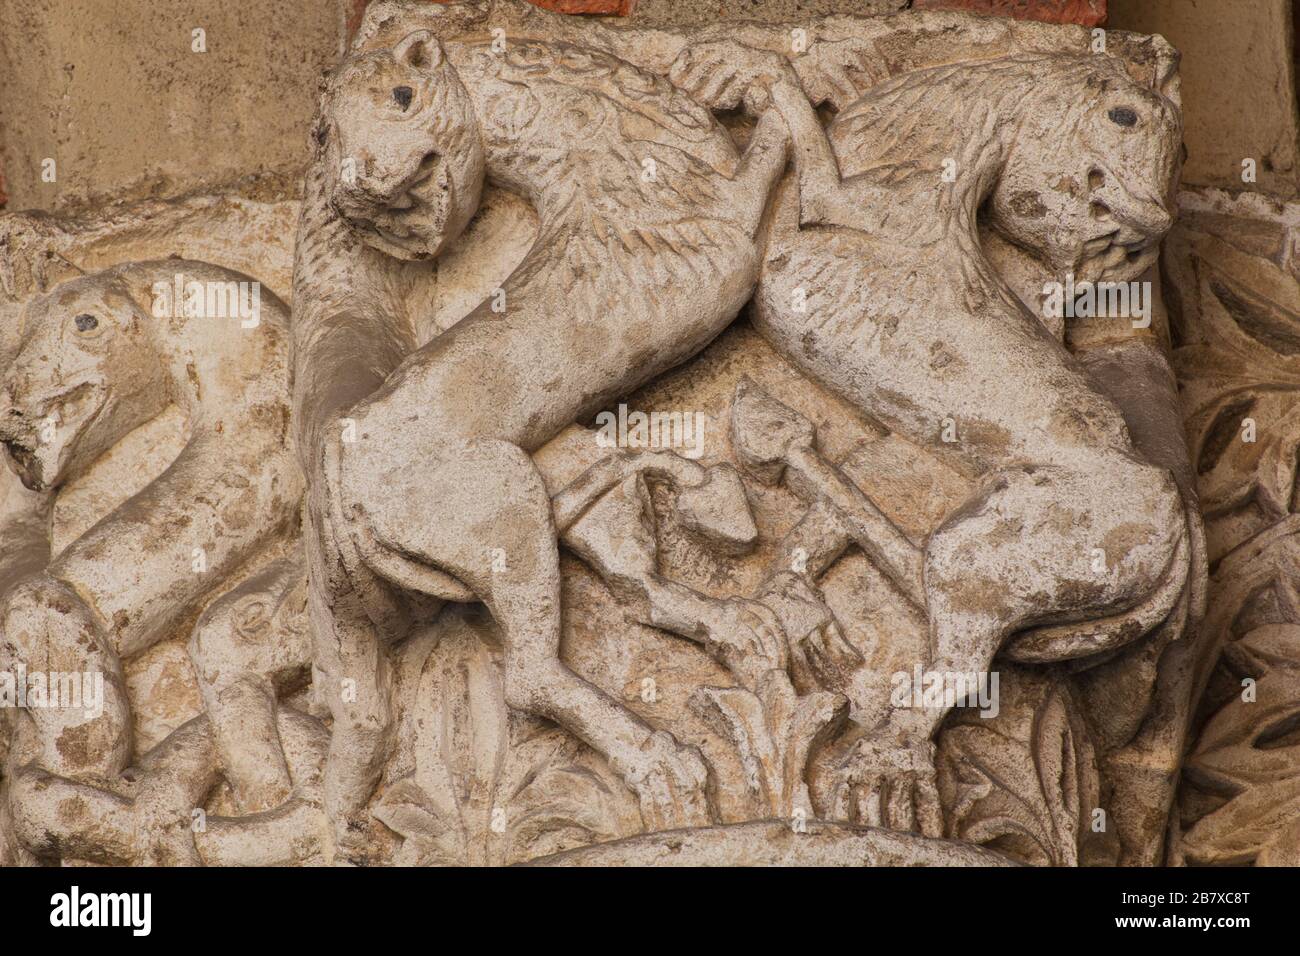 Das mittelalterliche Bestiarium - ein Paar Felinenkämpfe - romanischer Stil Hauptstadt - Atrium von Ansperto - Basilika Sant'Ambrogio - Mailand Stockfoto